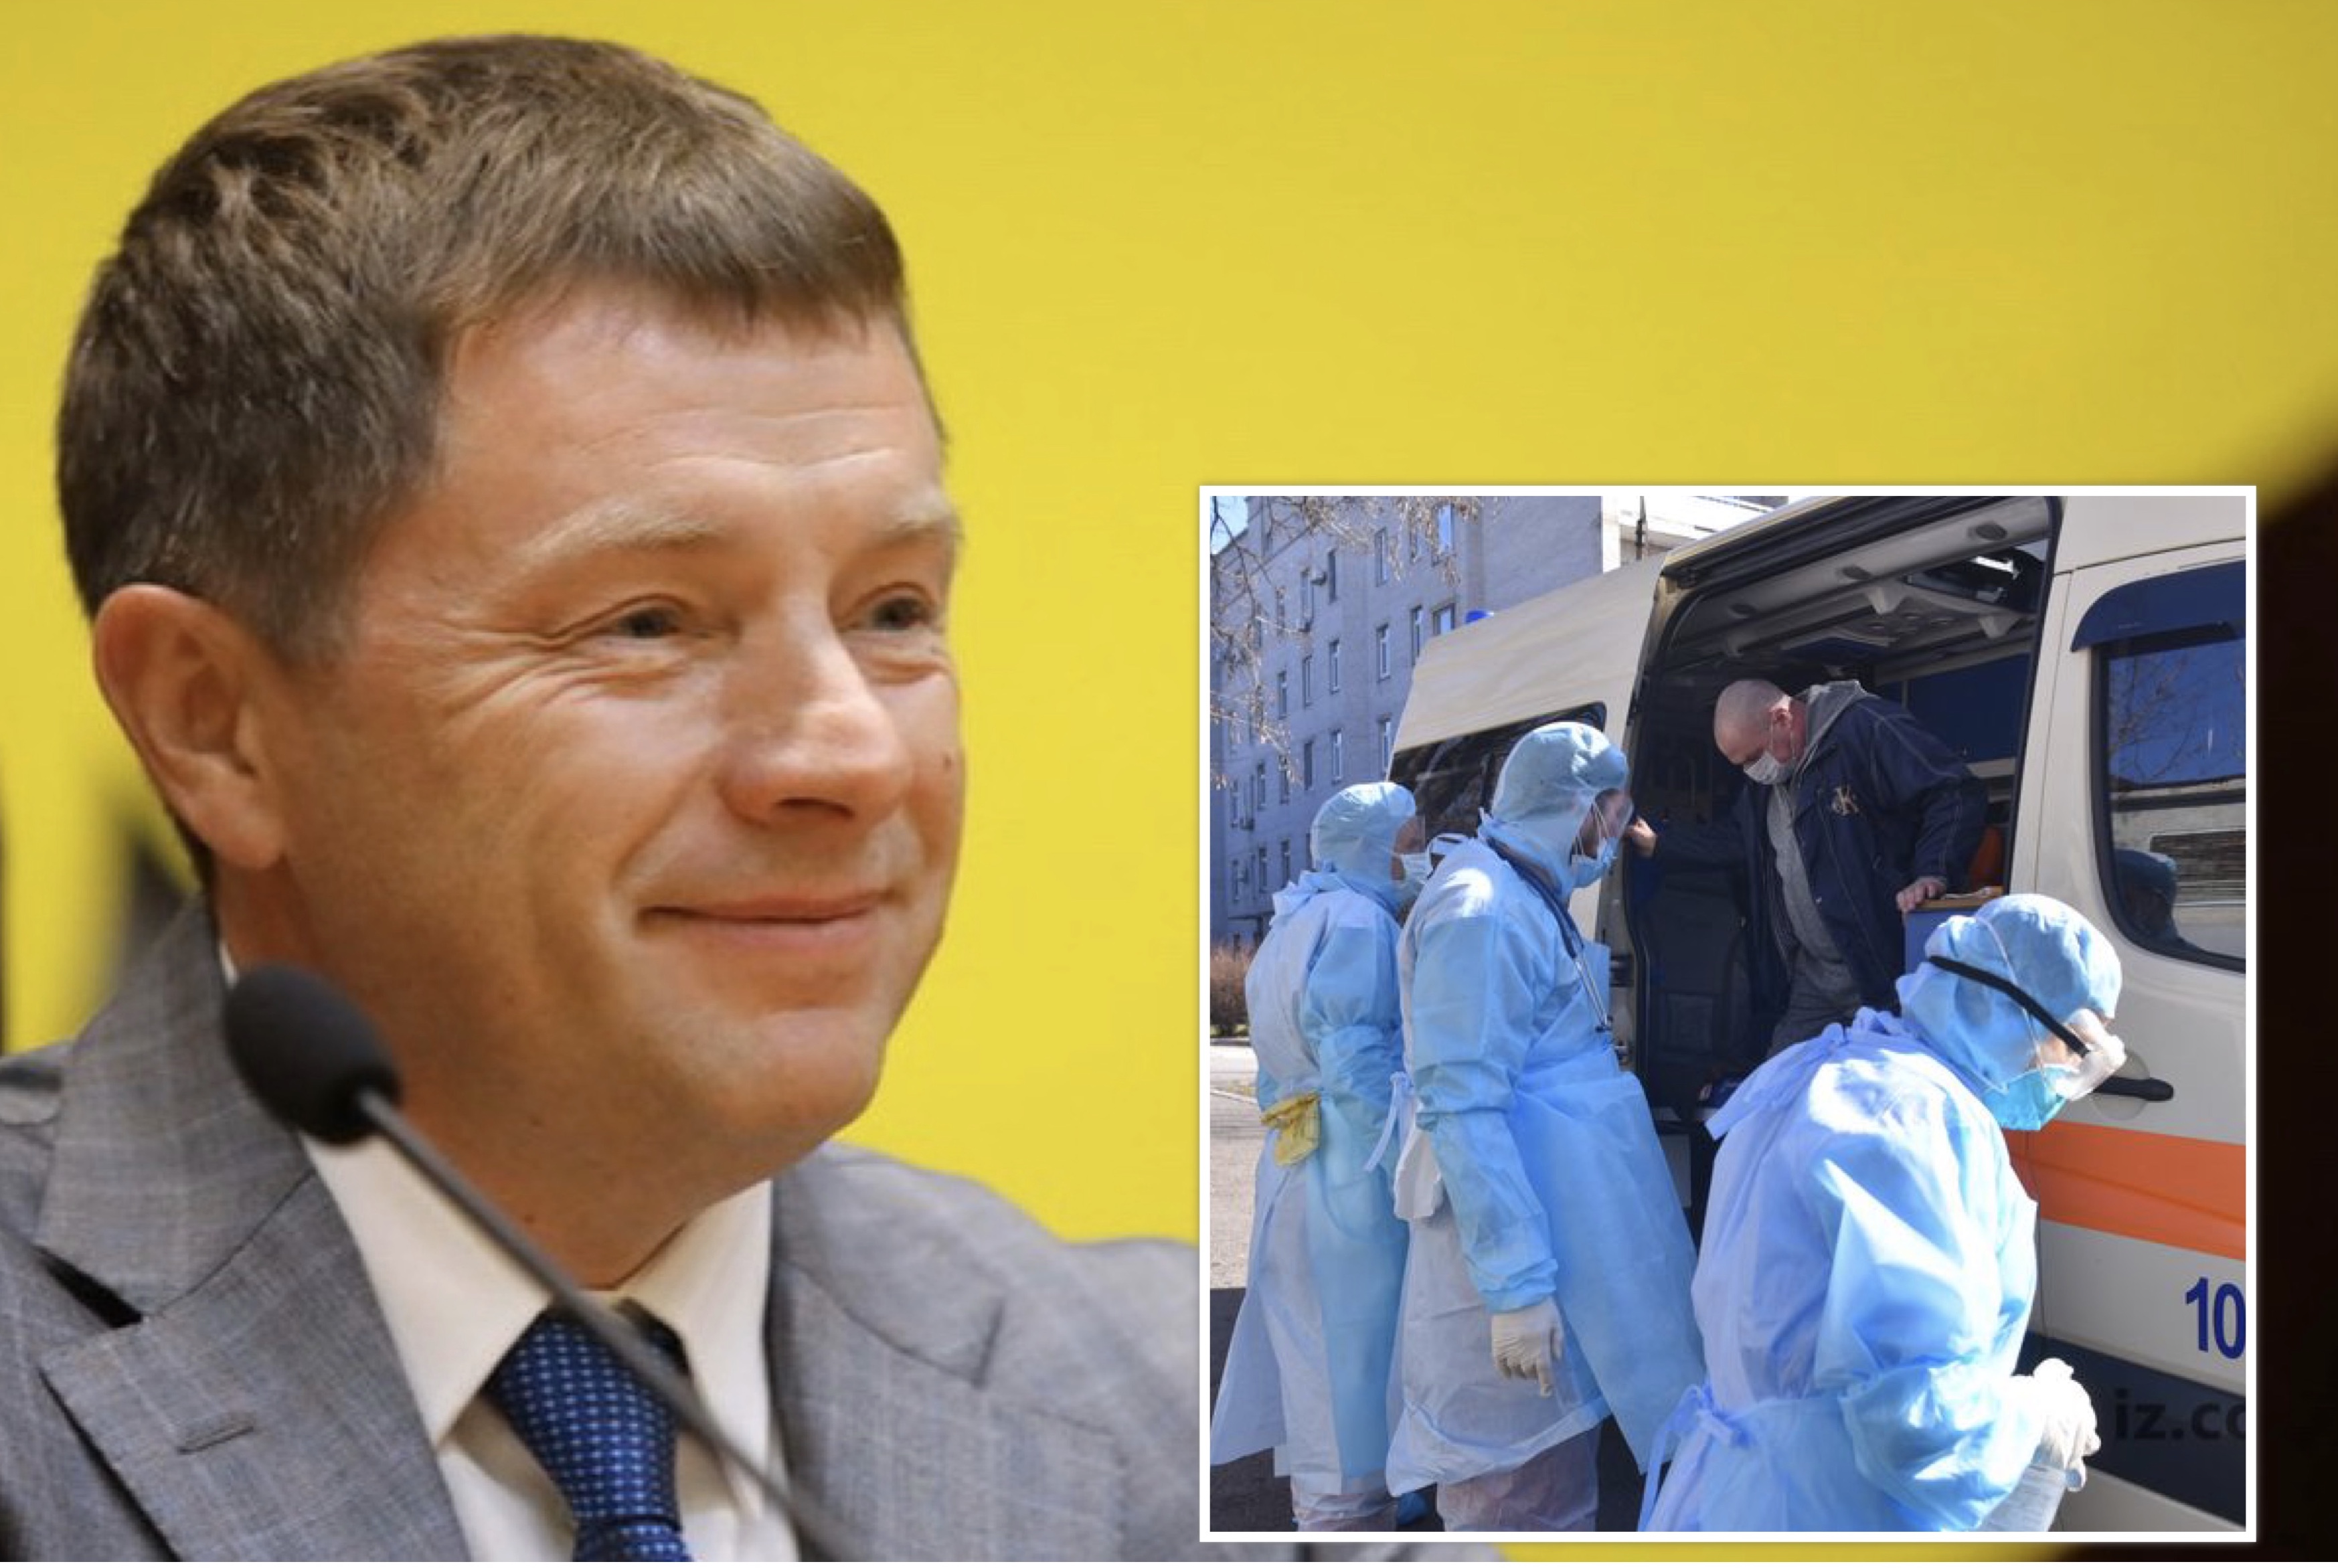 Невыплата надбавок медикам: Зеленский пригрозил оставить запорожского губернатора без зарплаты и должности